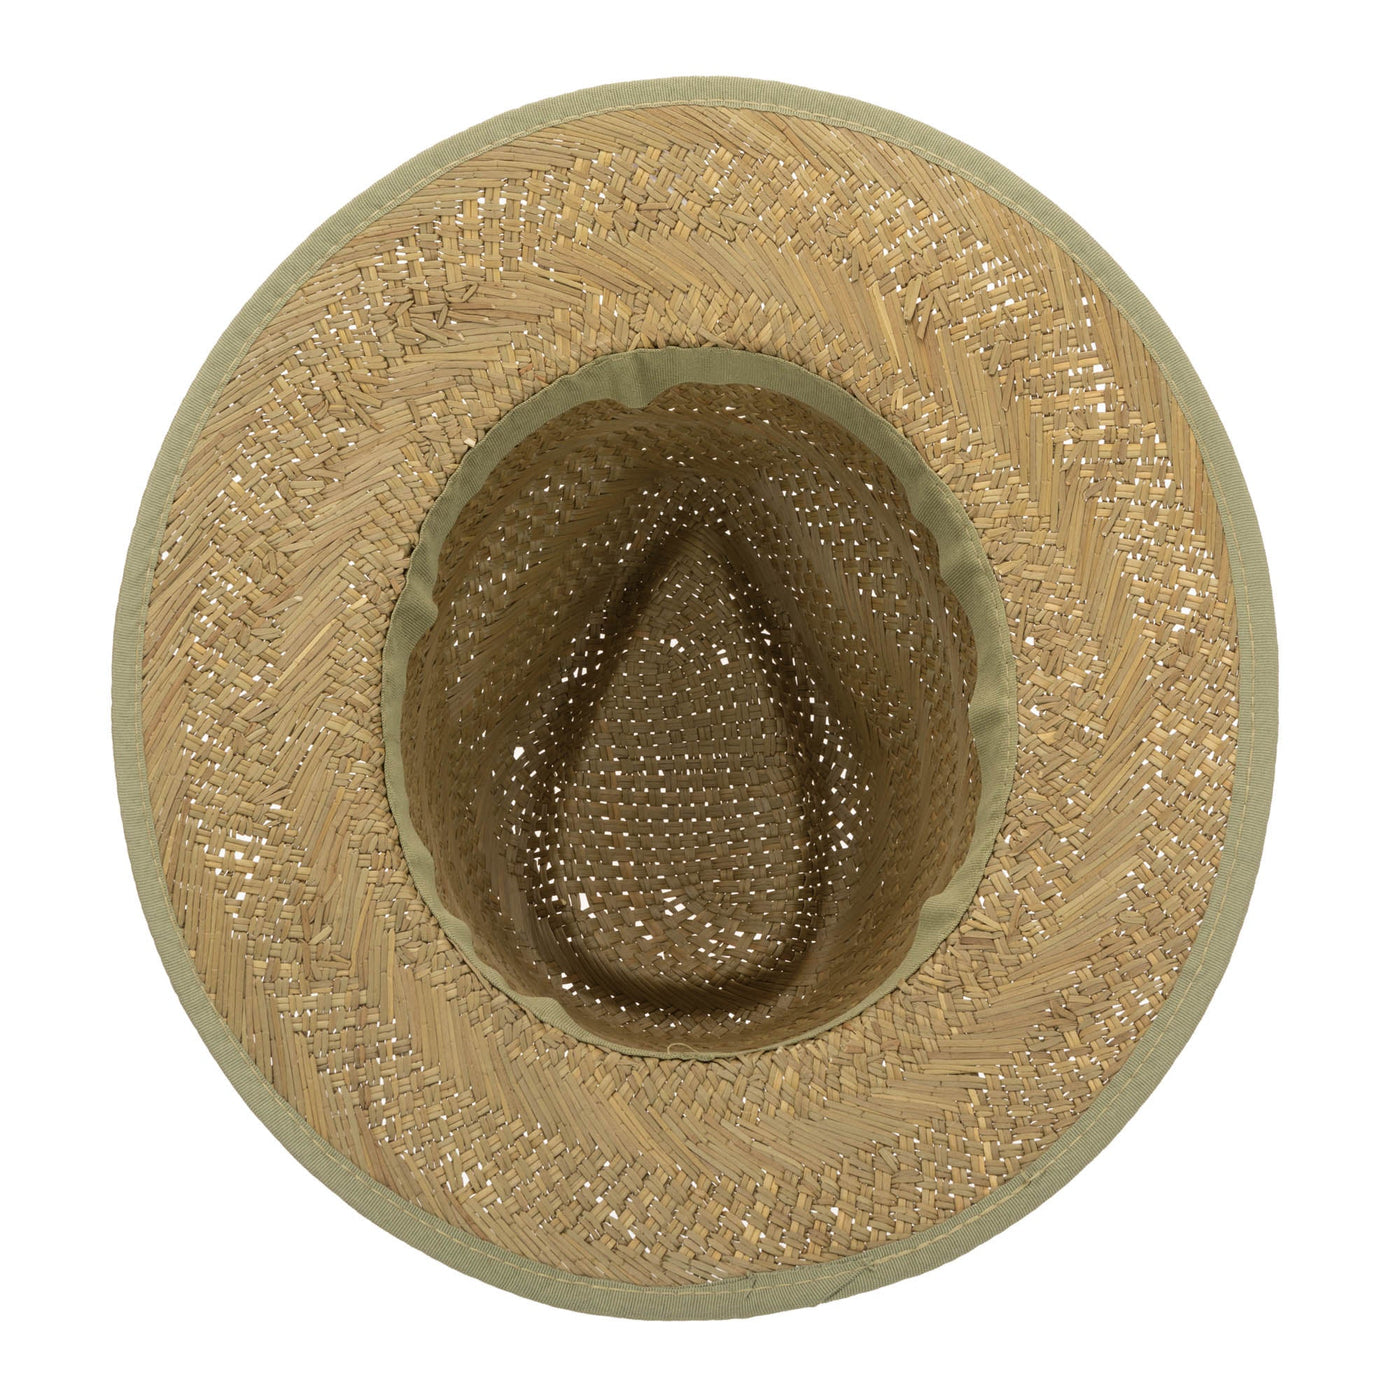 Mens Seagrass Stingy Brim Fedora (SGF2036)-FEDORA-San Diego Hat Company